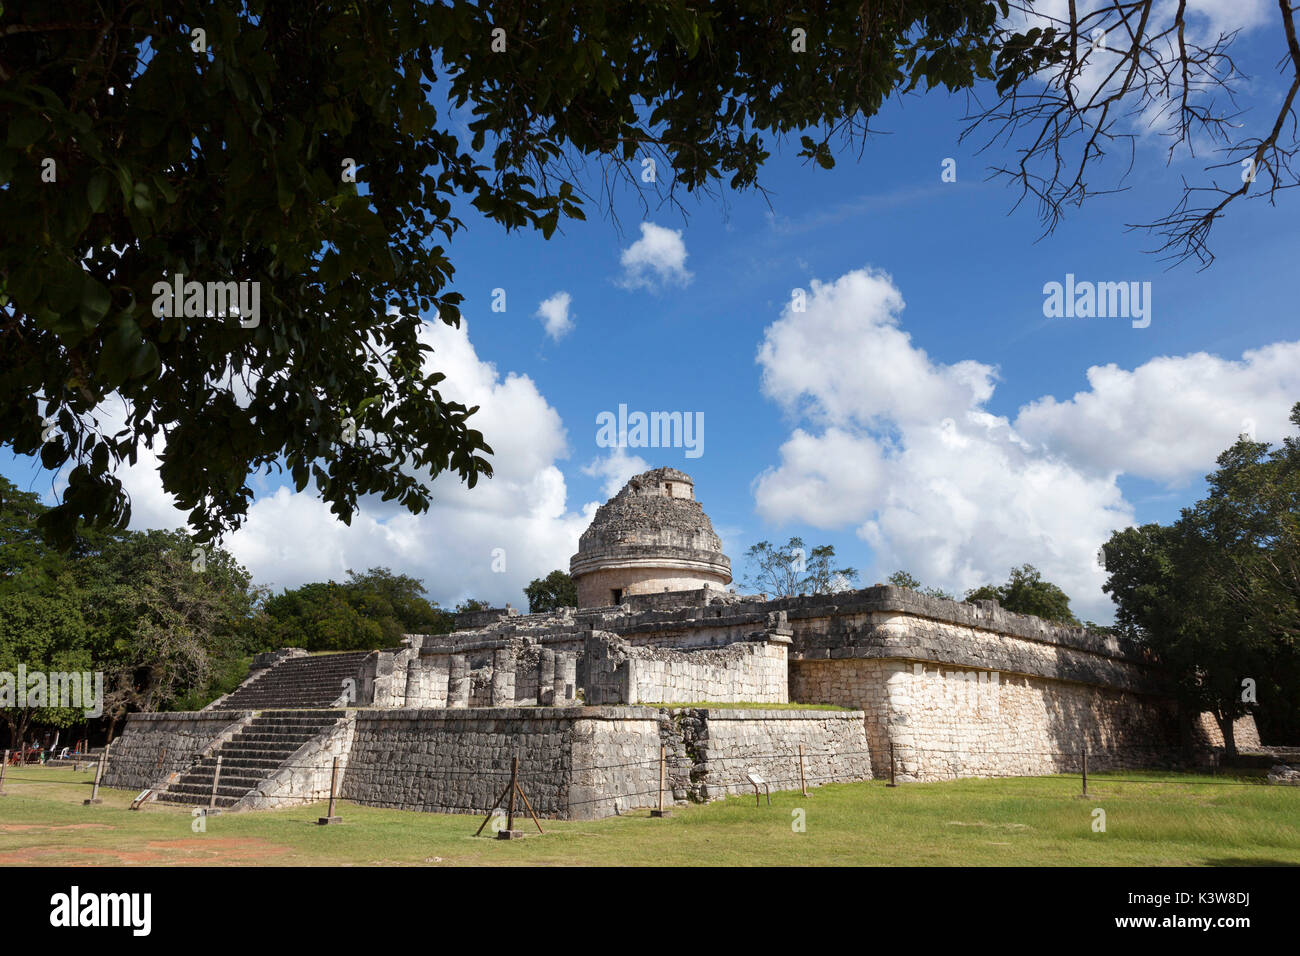 El Caracol observatory temple, Chichen Itza site archéologique, Yucatan, Mexique. Banque D'Images